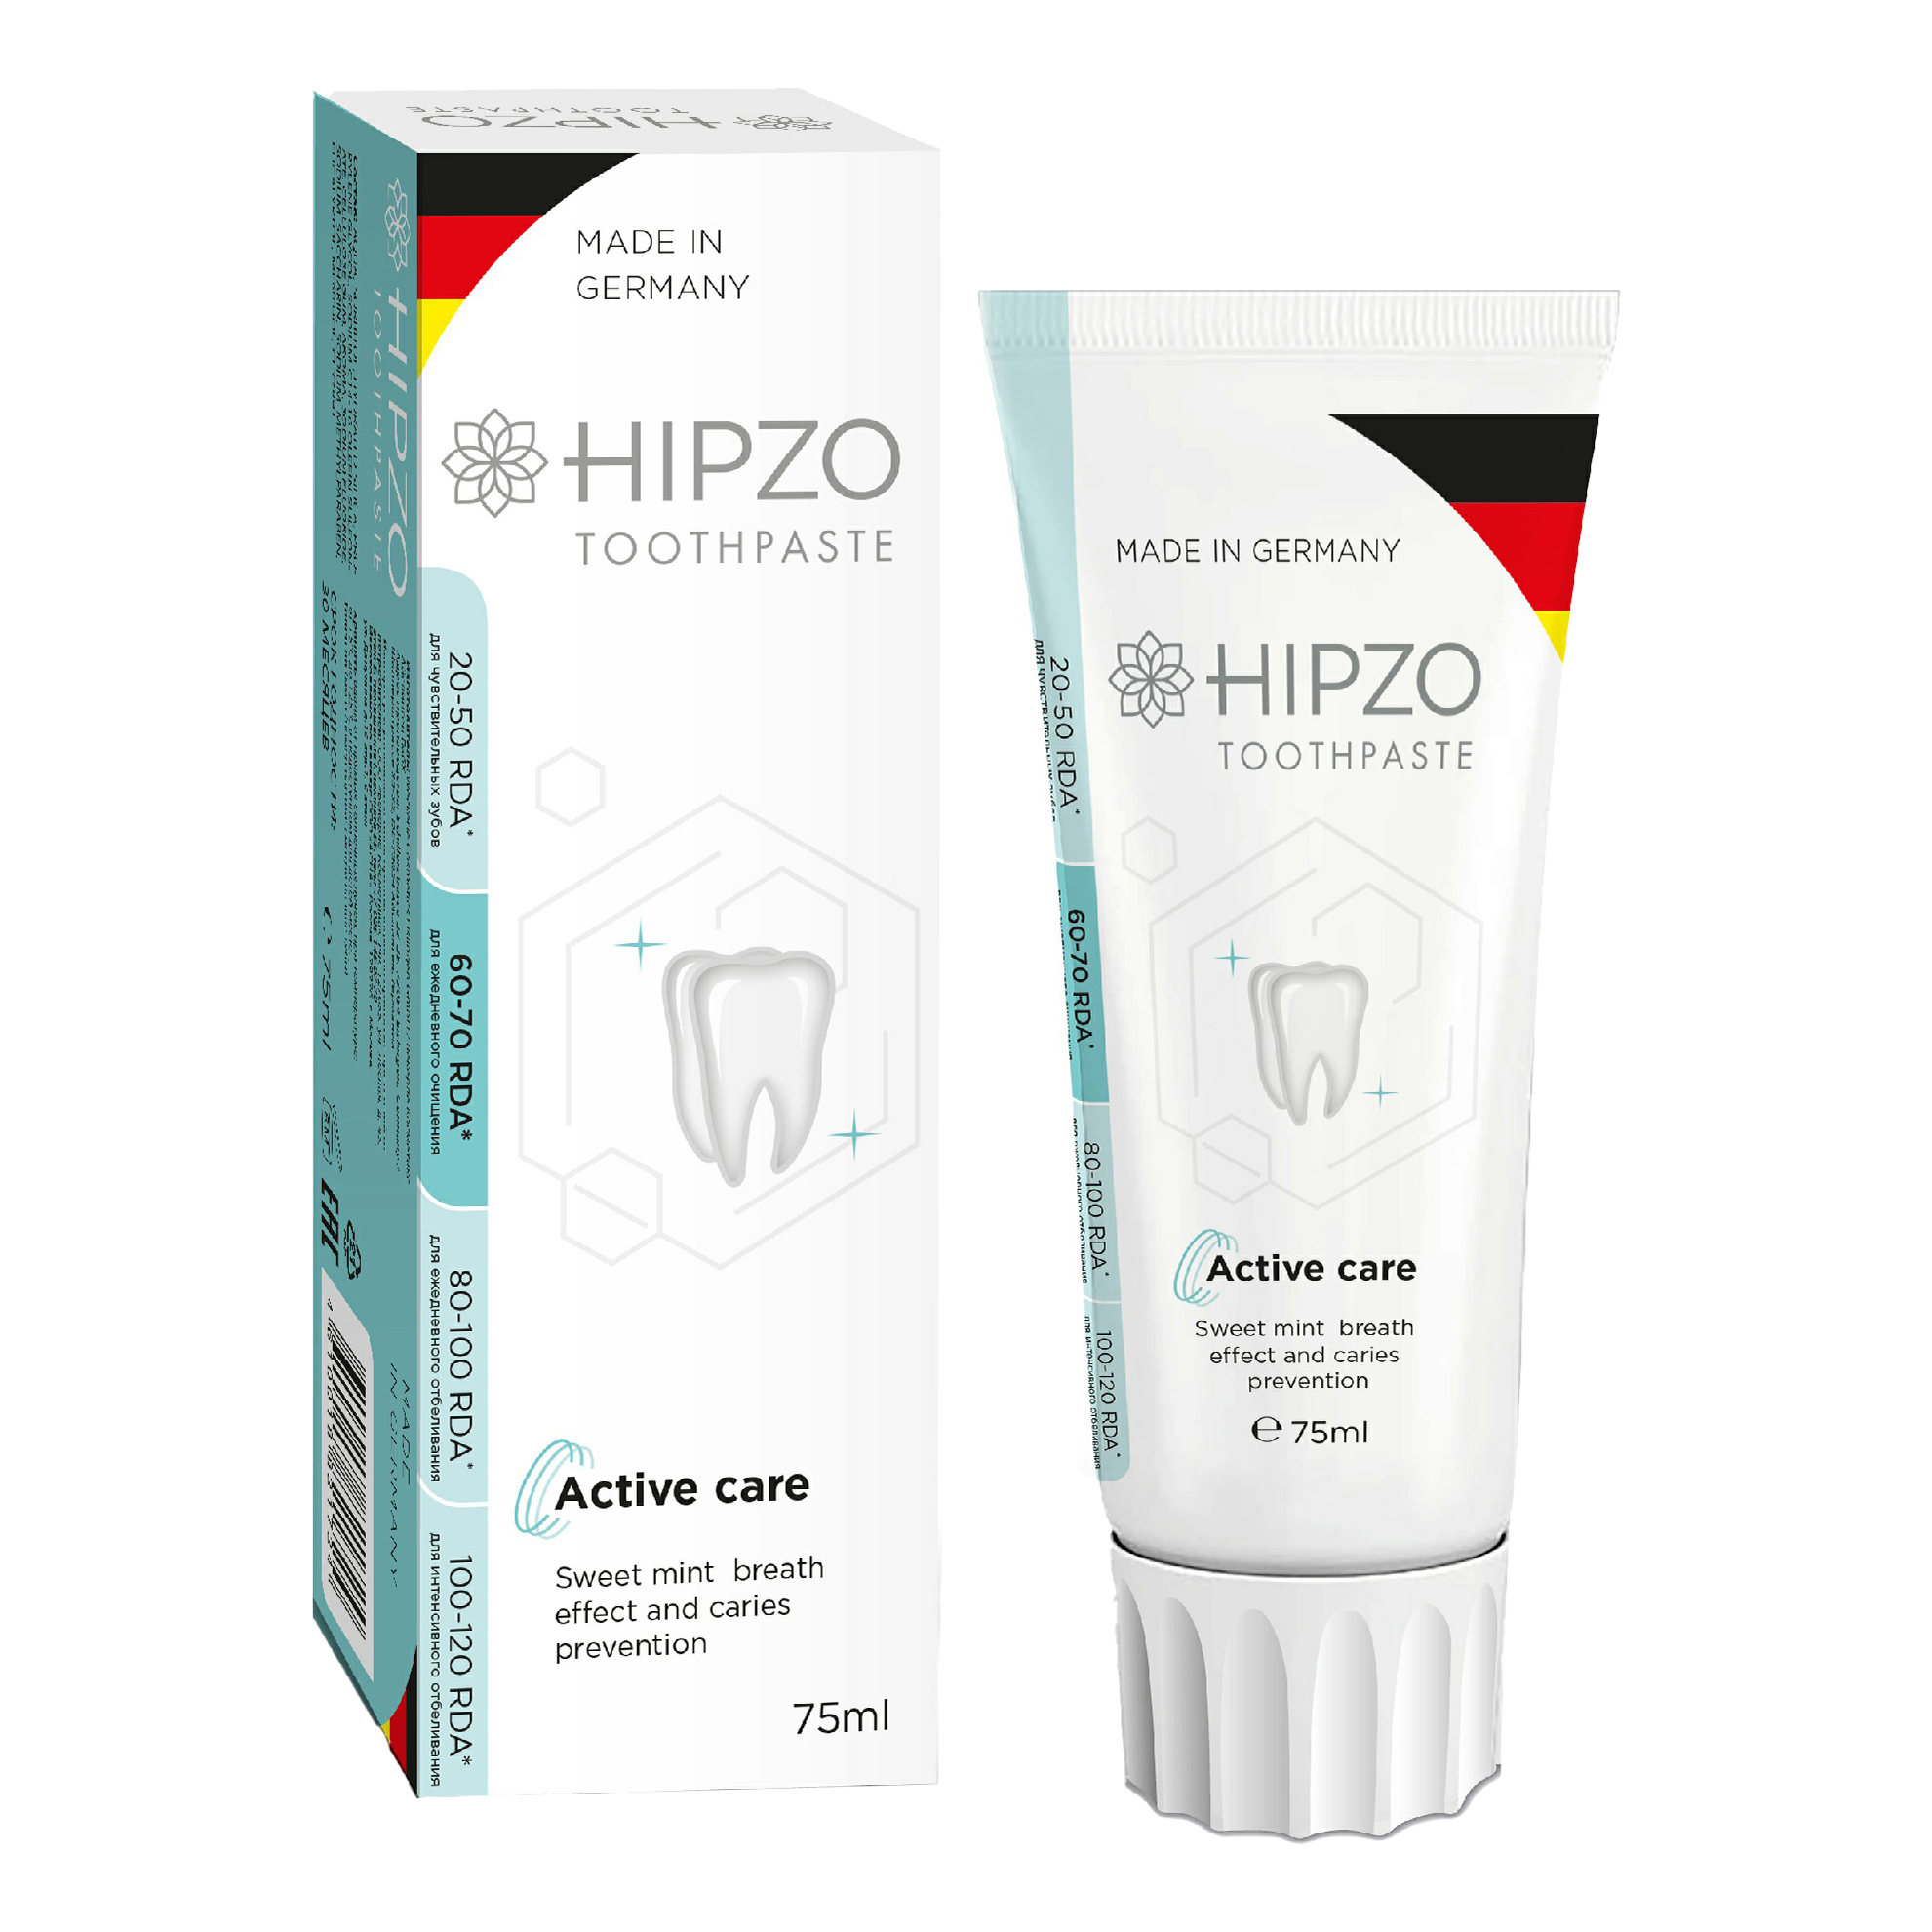 Зубная паста Hipzo Active care сладкая мята для свежести дыхания и защиты от кариеса 75 мл зубная паста a119 203 японские травы для защиты от кариеса 100 г